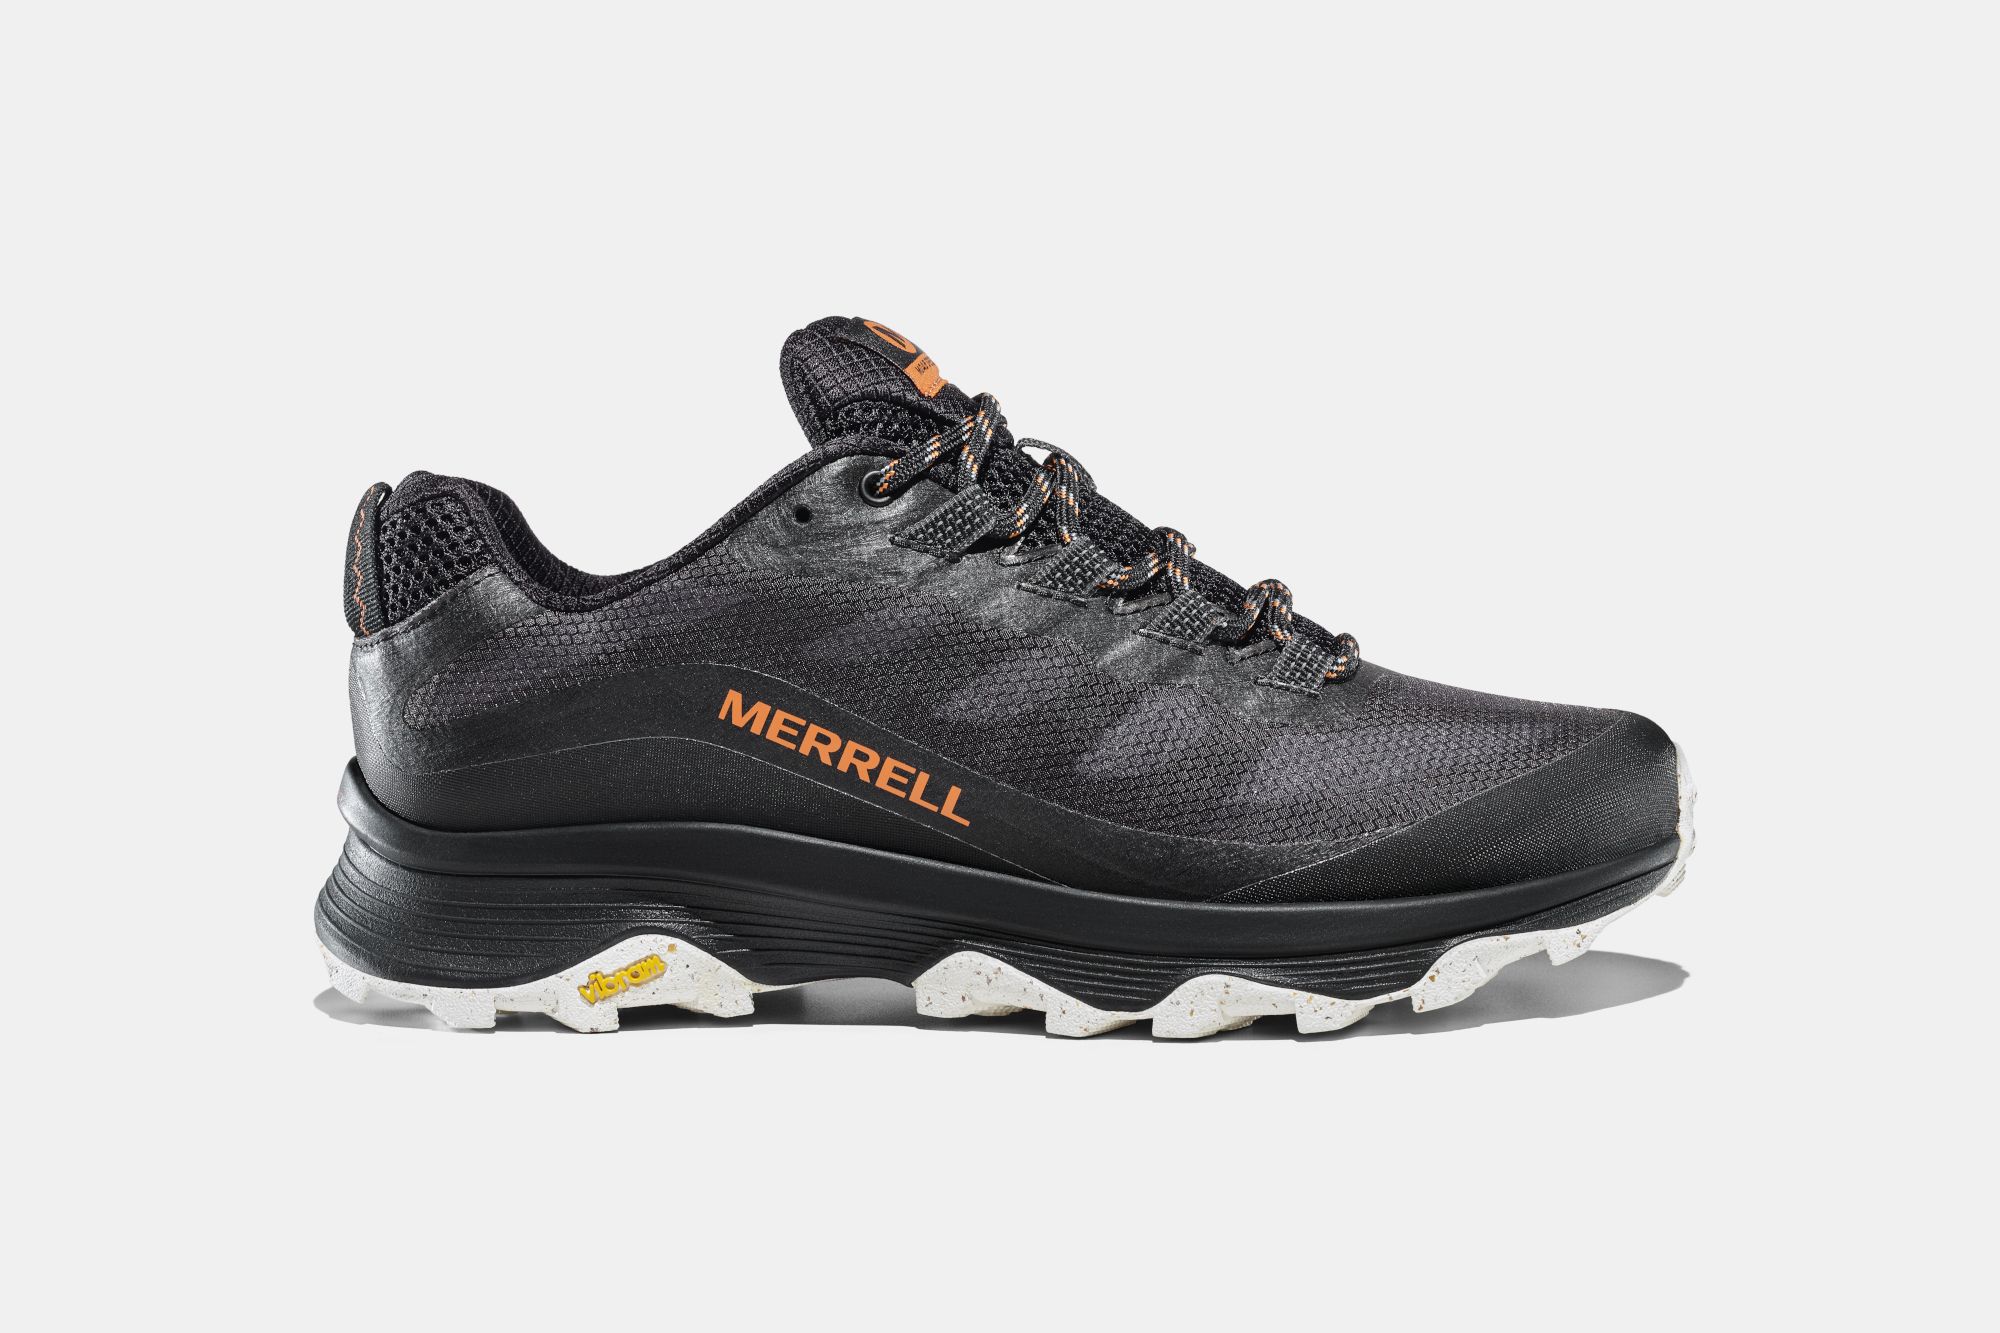 Las Merrell Moab Speed Gore-Tex son unas zapatillas de Trekking cómodas,  resistentes y versátiles. Ideales par